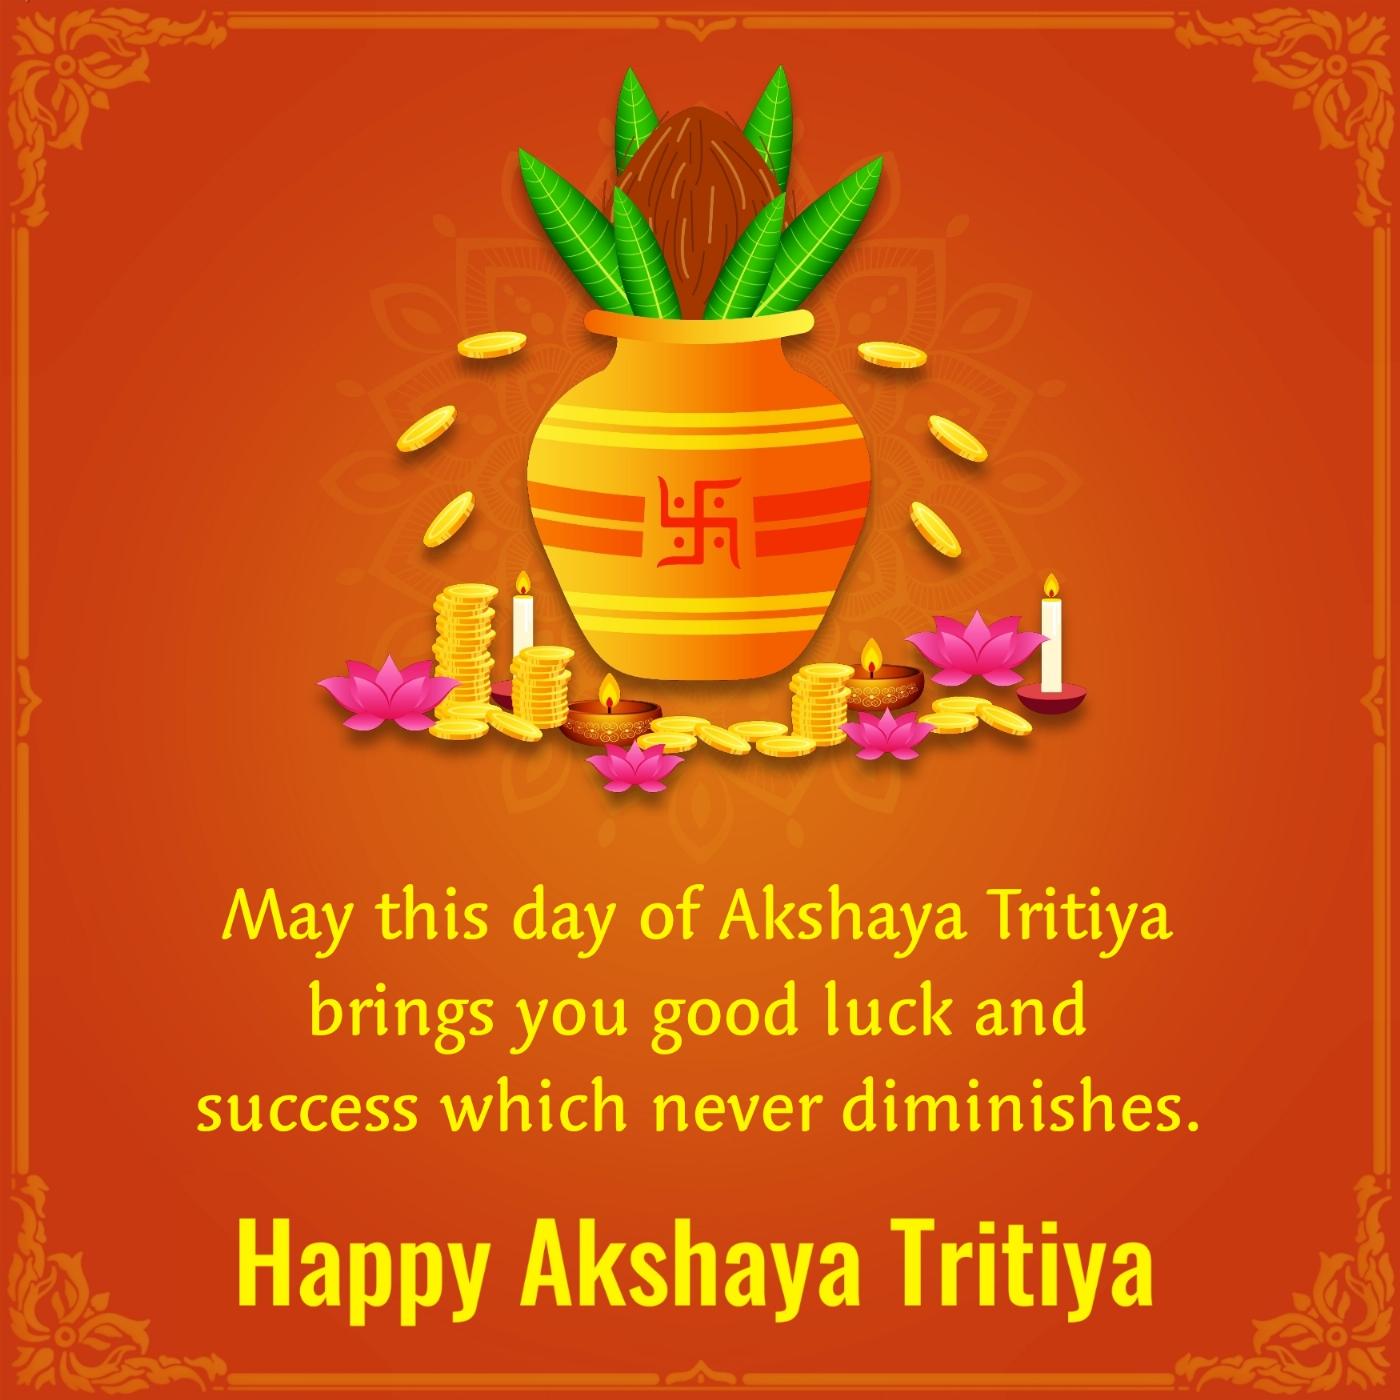 May this day of Akshaya Tritiya brings you good luck and success